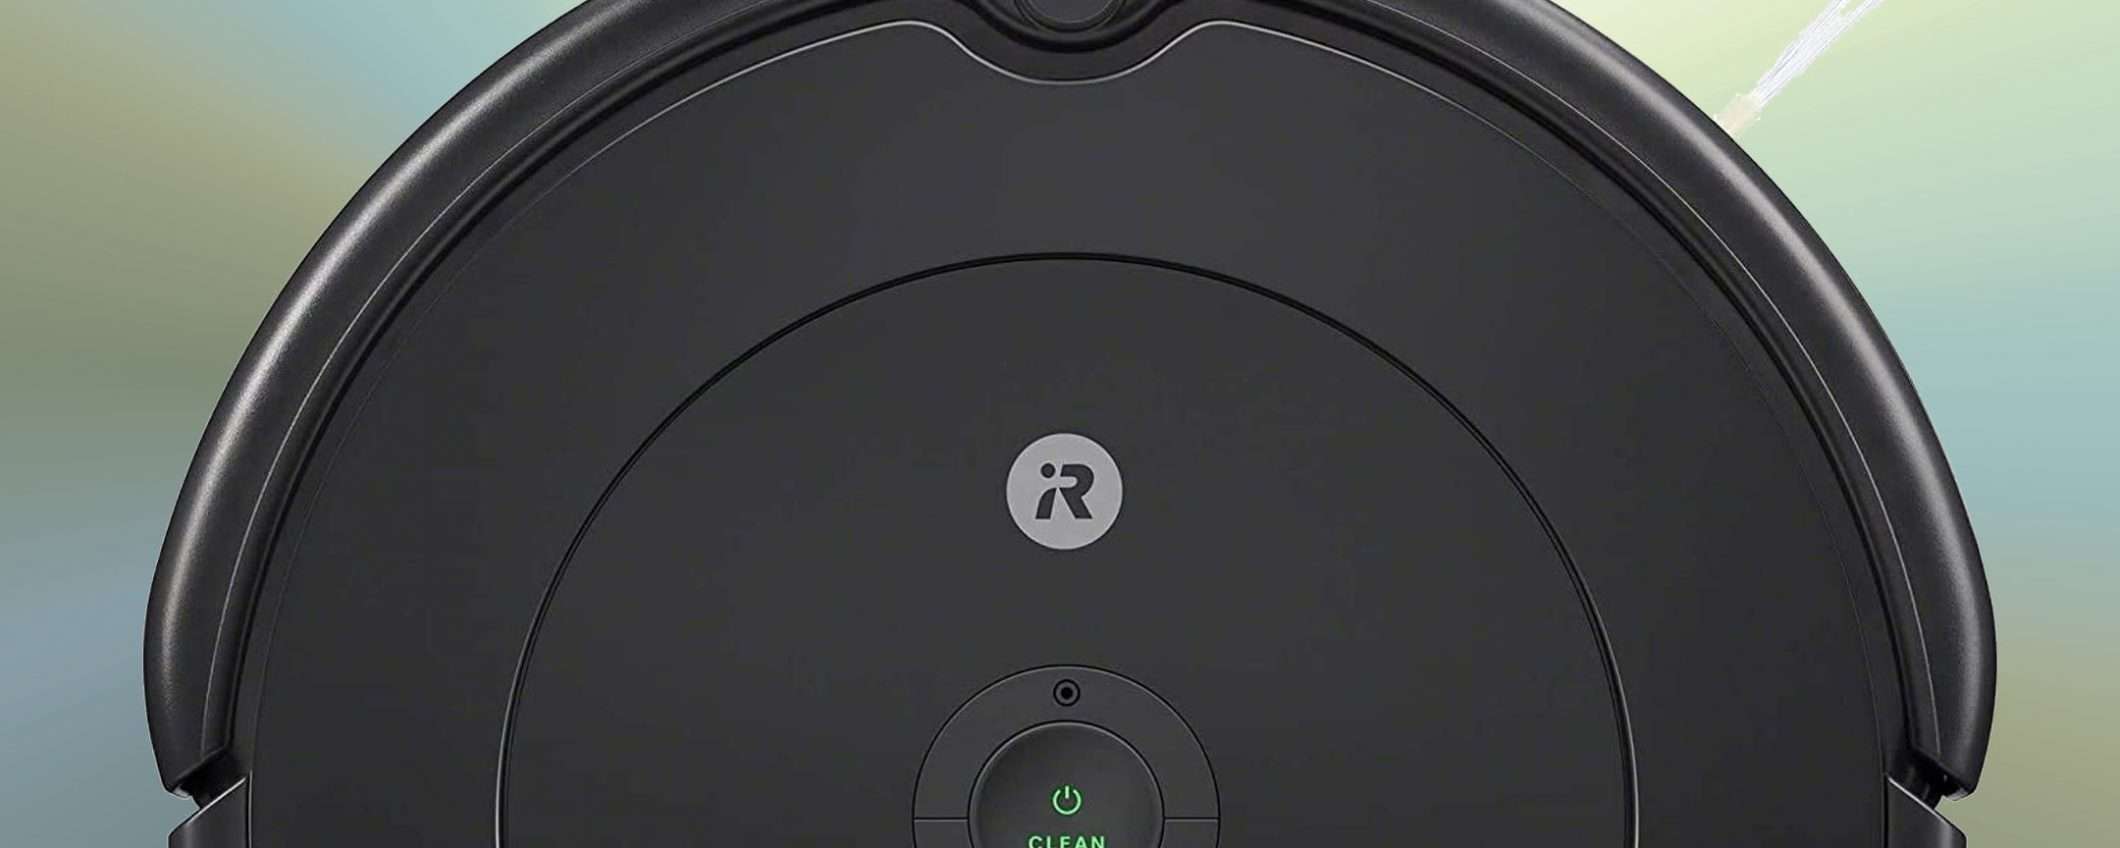 Roomba 692, iRobot a prezzo stracciato per 3 giorni